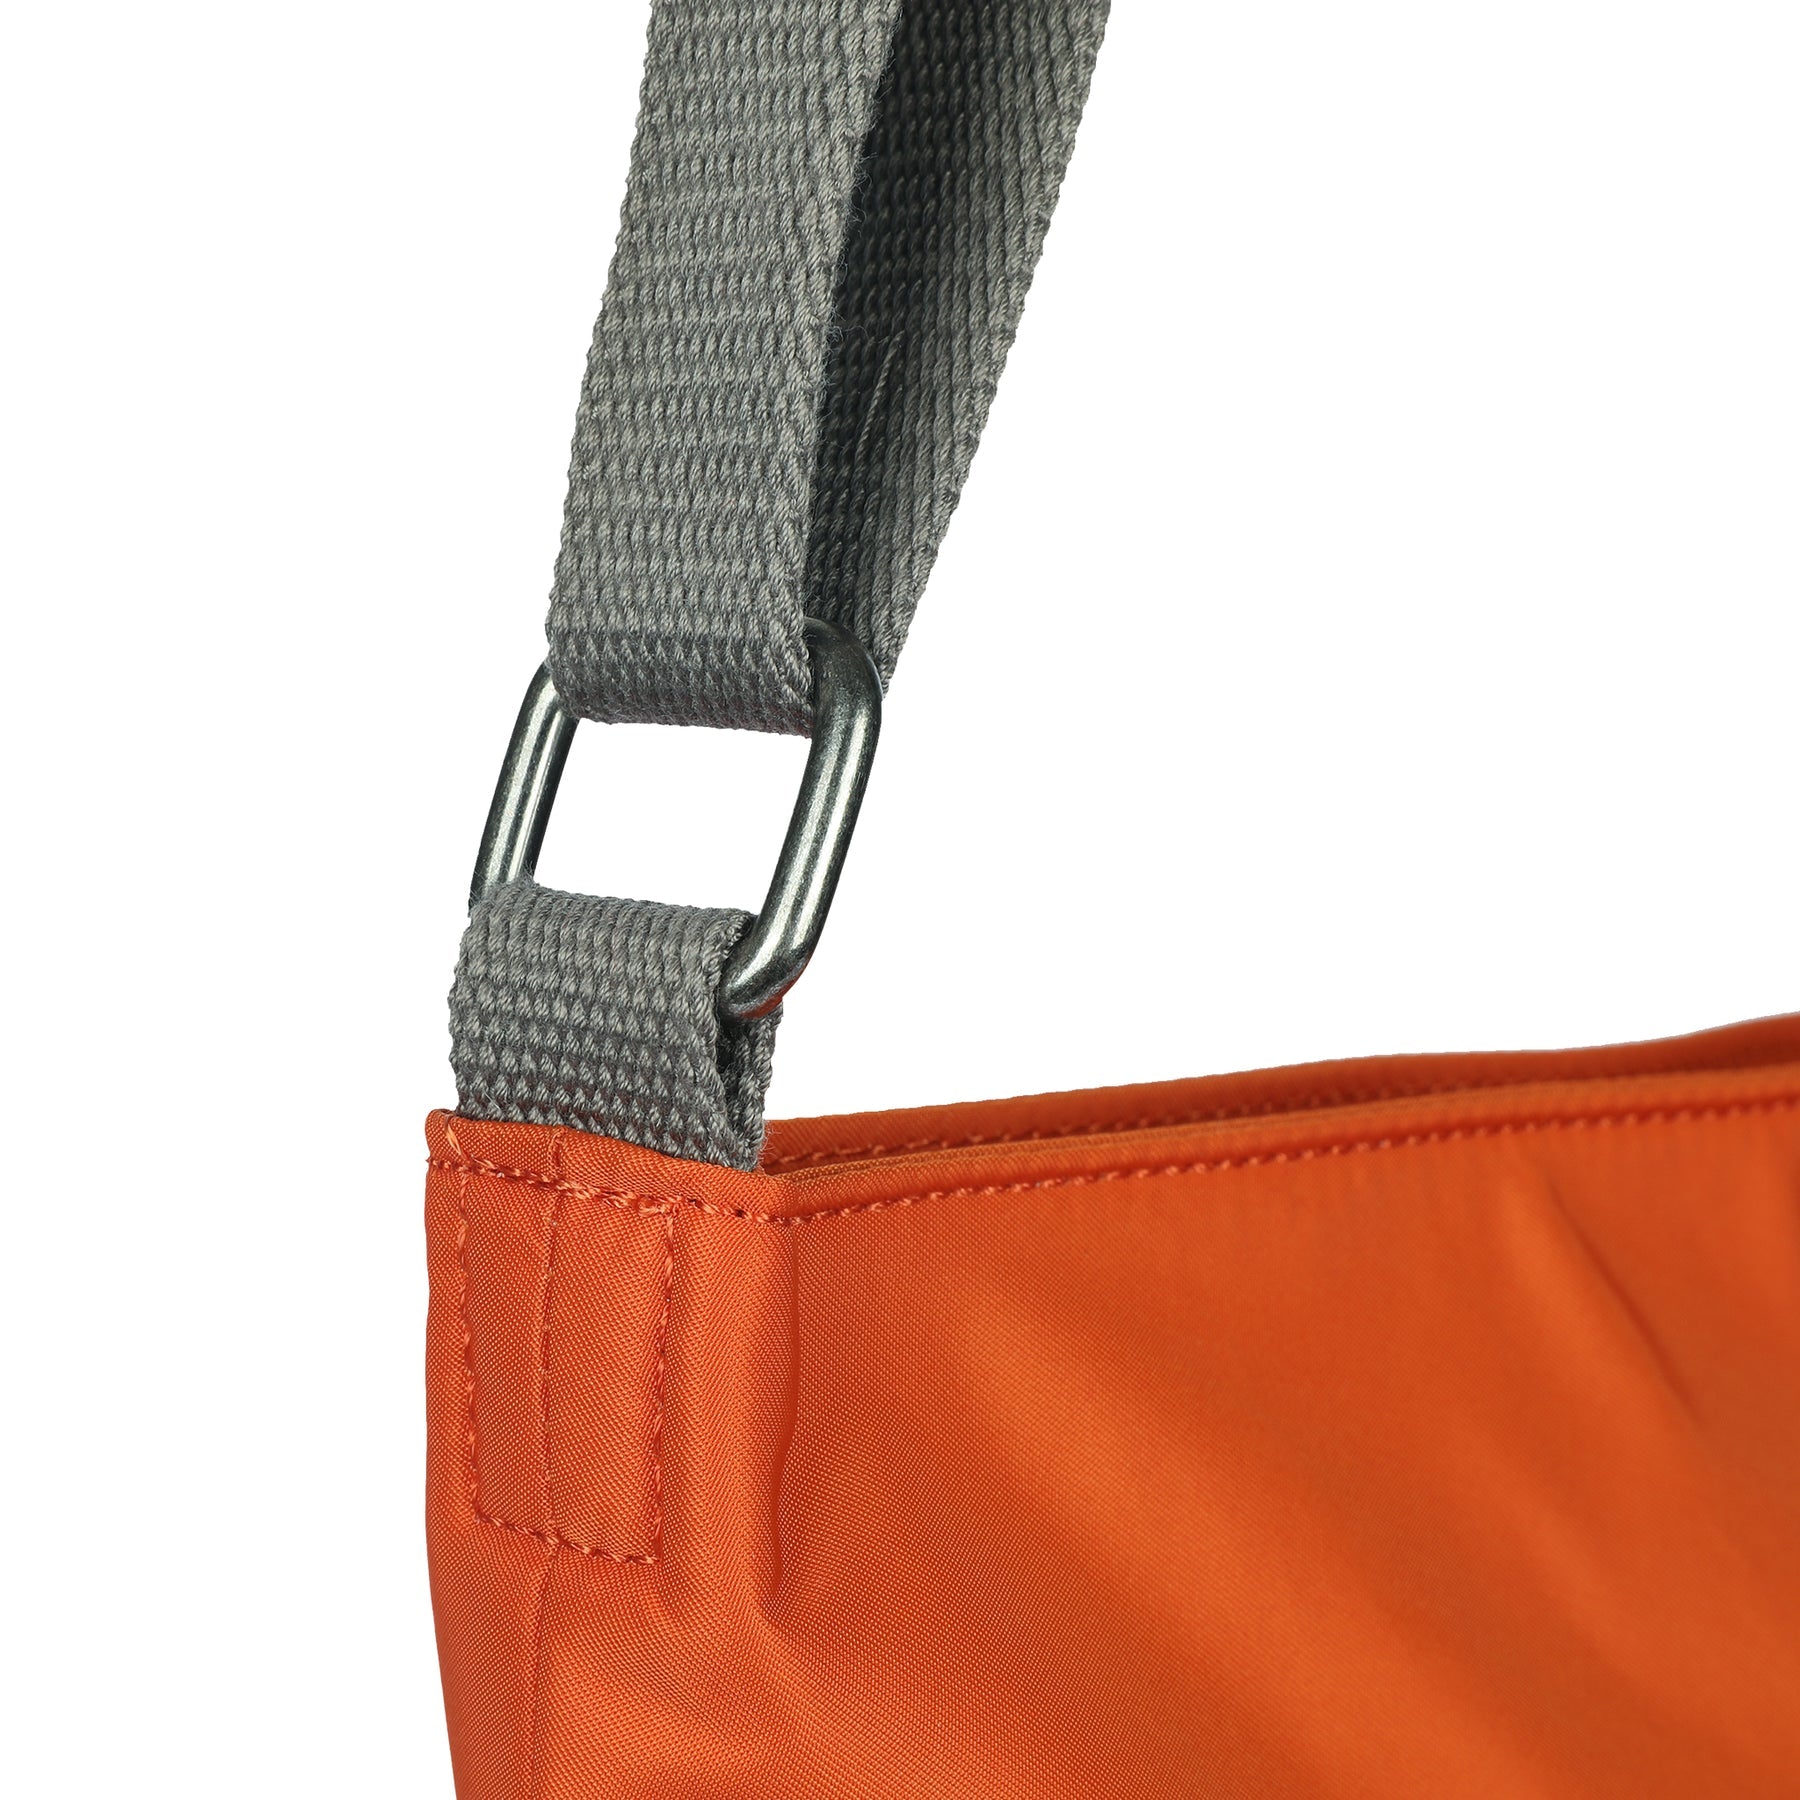 ROKA Kennington B Burnt Orange Medium Recycled Nylon Bag - OS